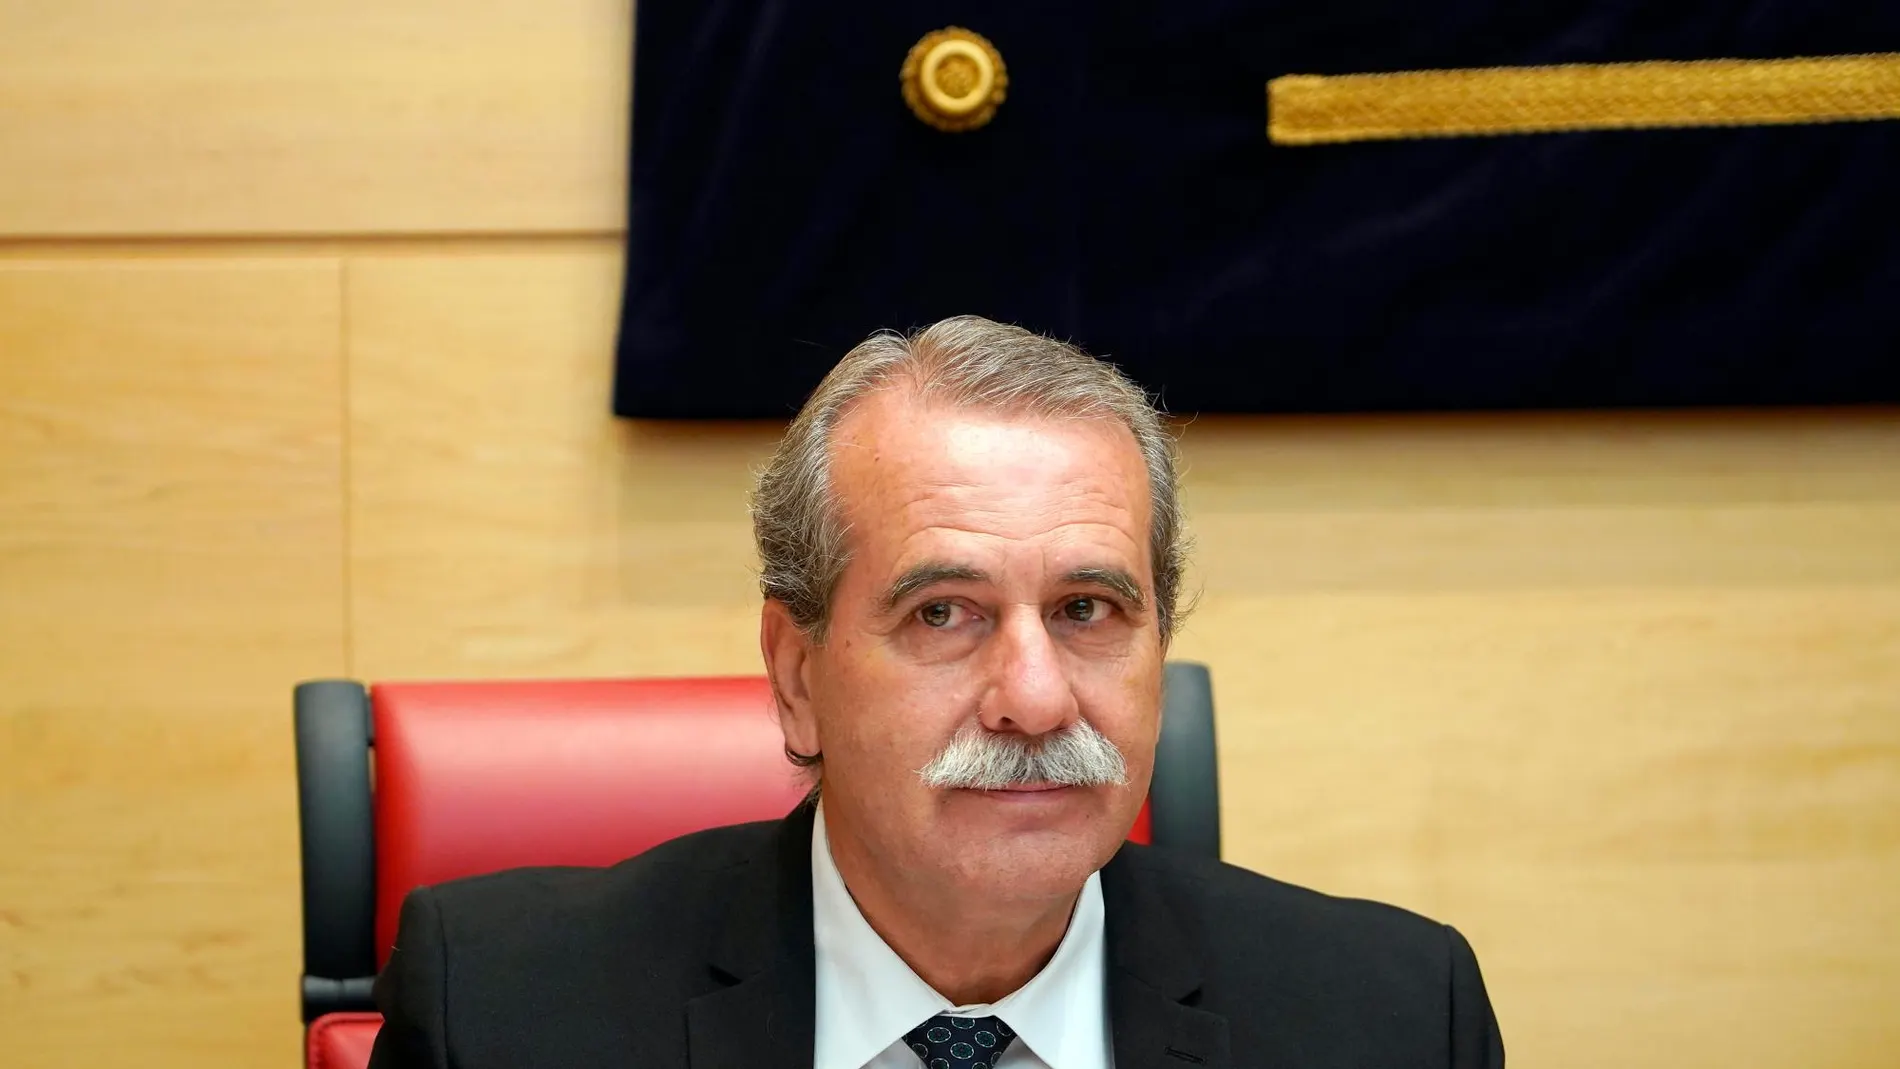 El presidente del Consejo Consultivo de Castilla y León, Agustín Sánchez de Vega